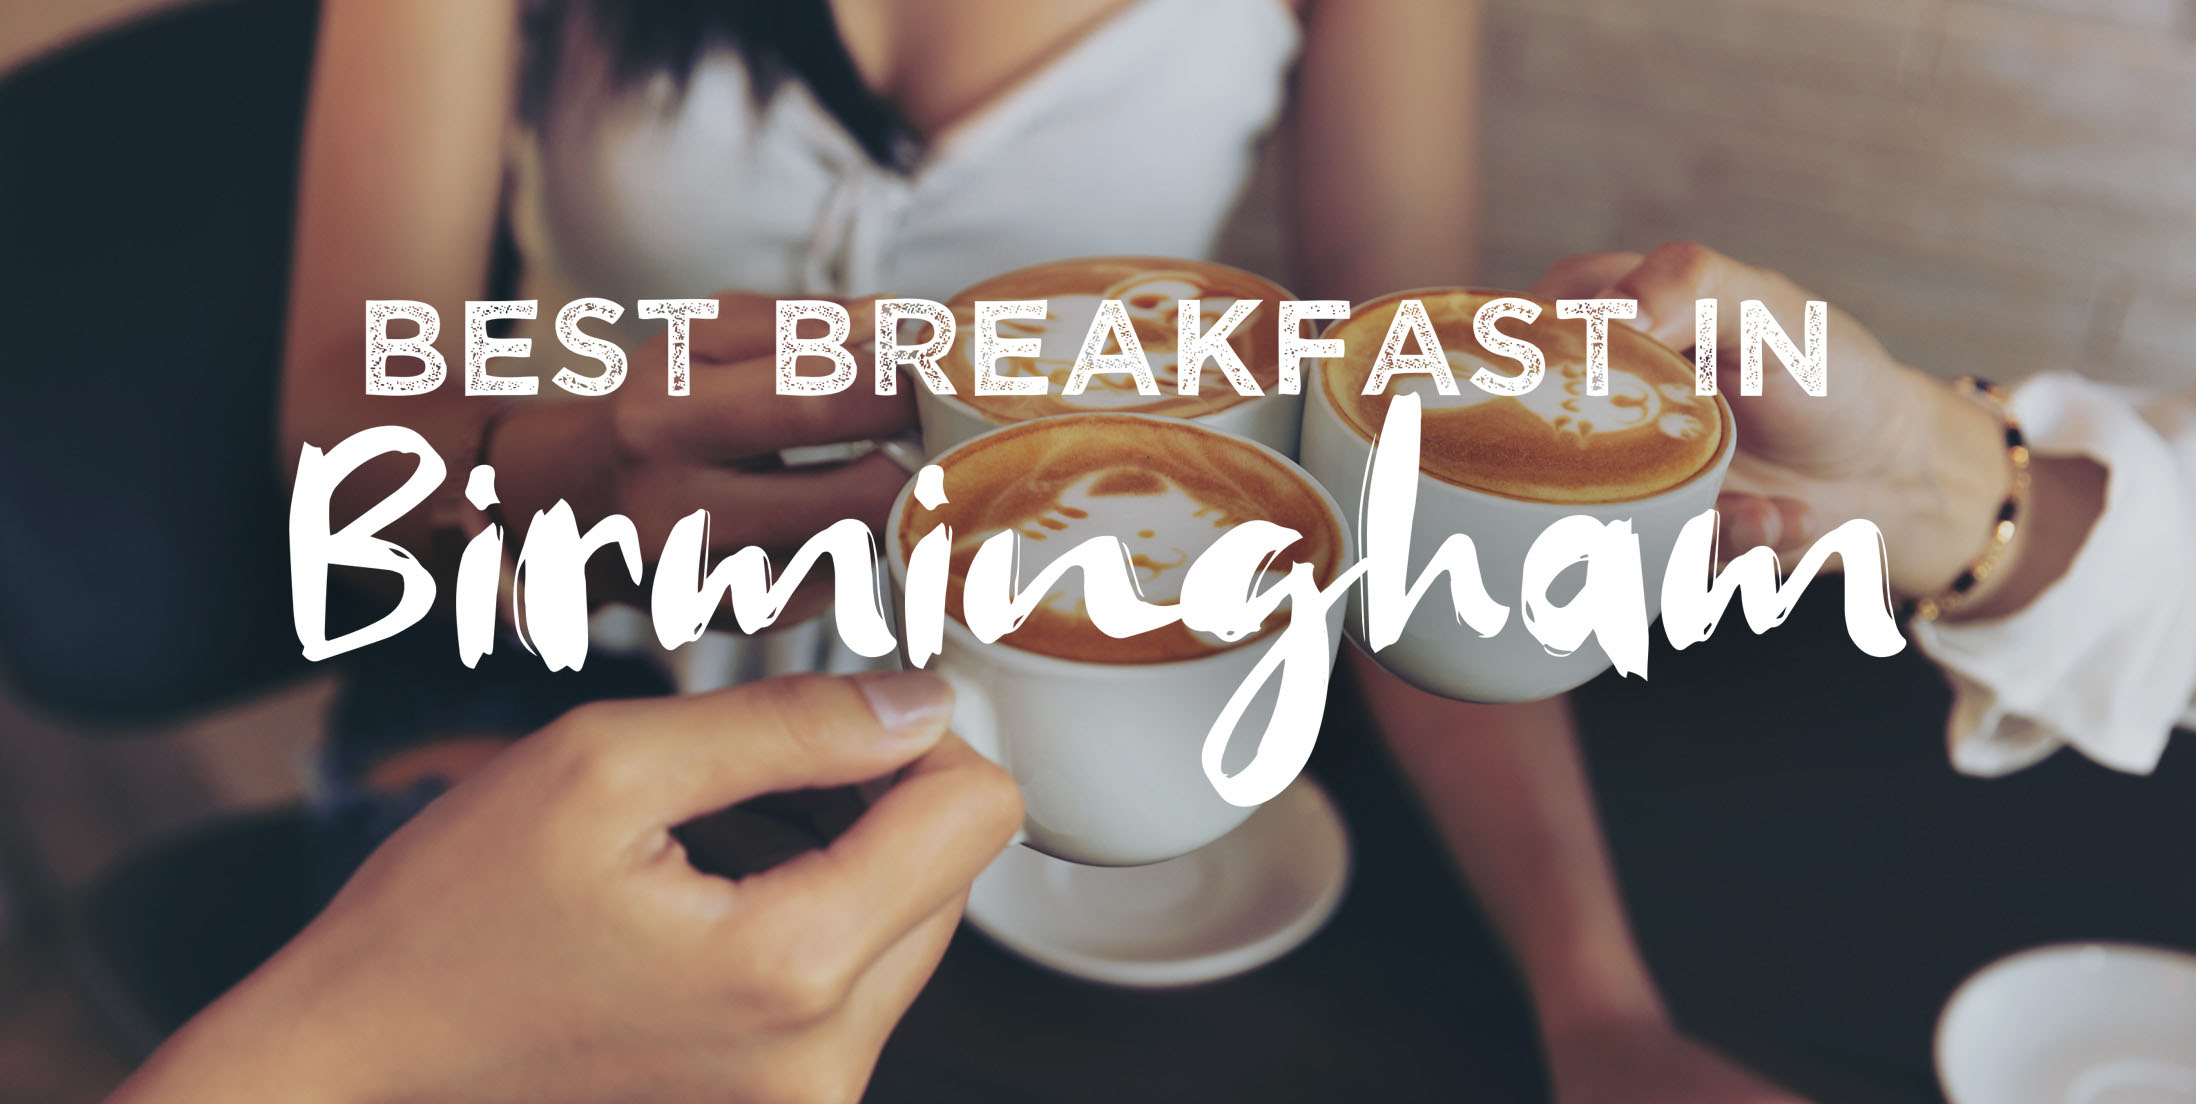 Best Breakfast in Birmingham